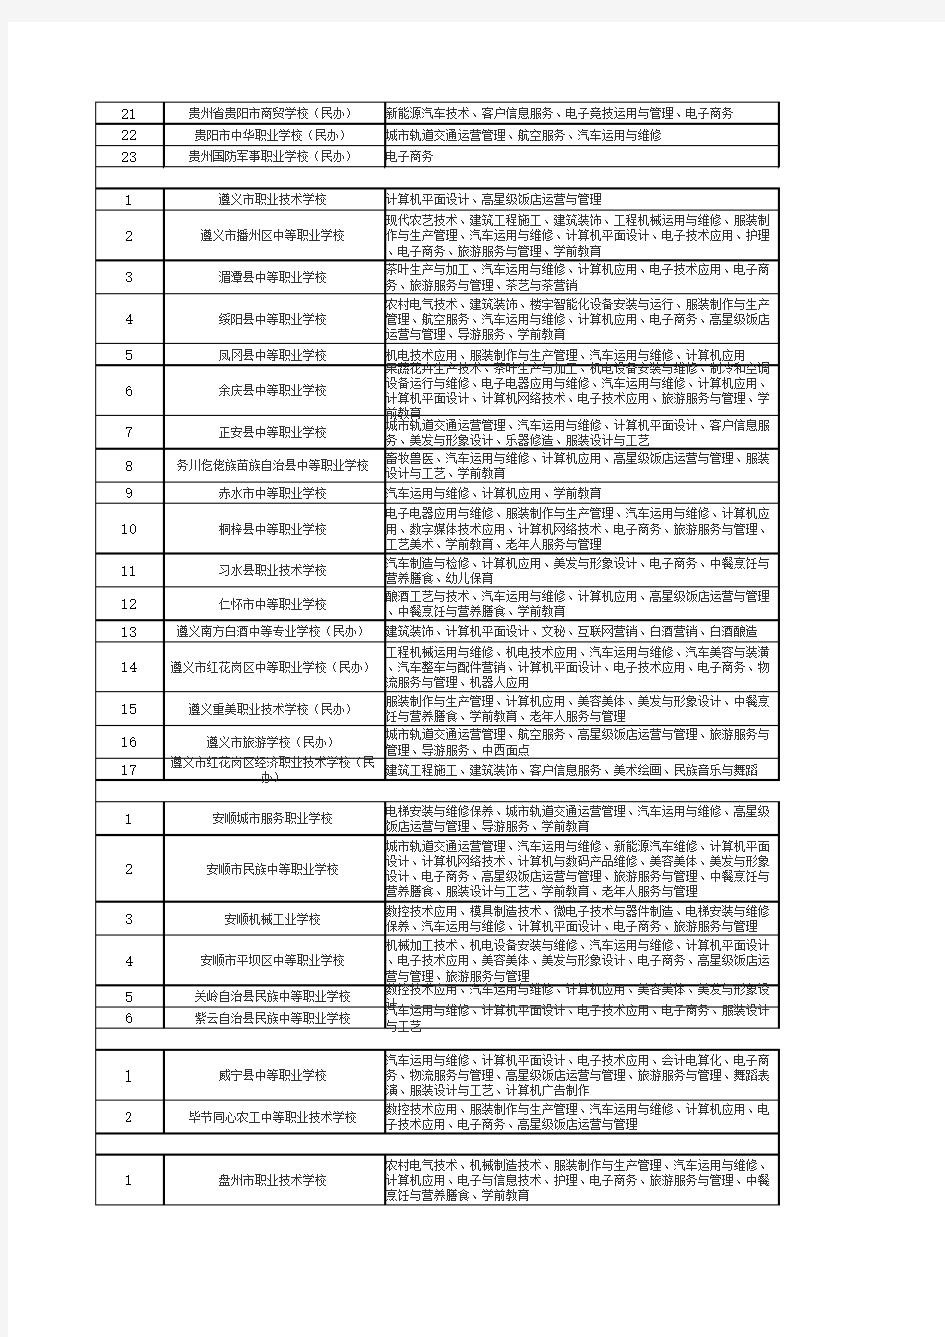 贵州省2020春季中等职业教育招生学校及专业名单(91所)